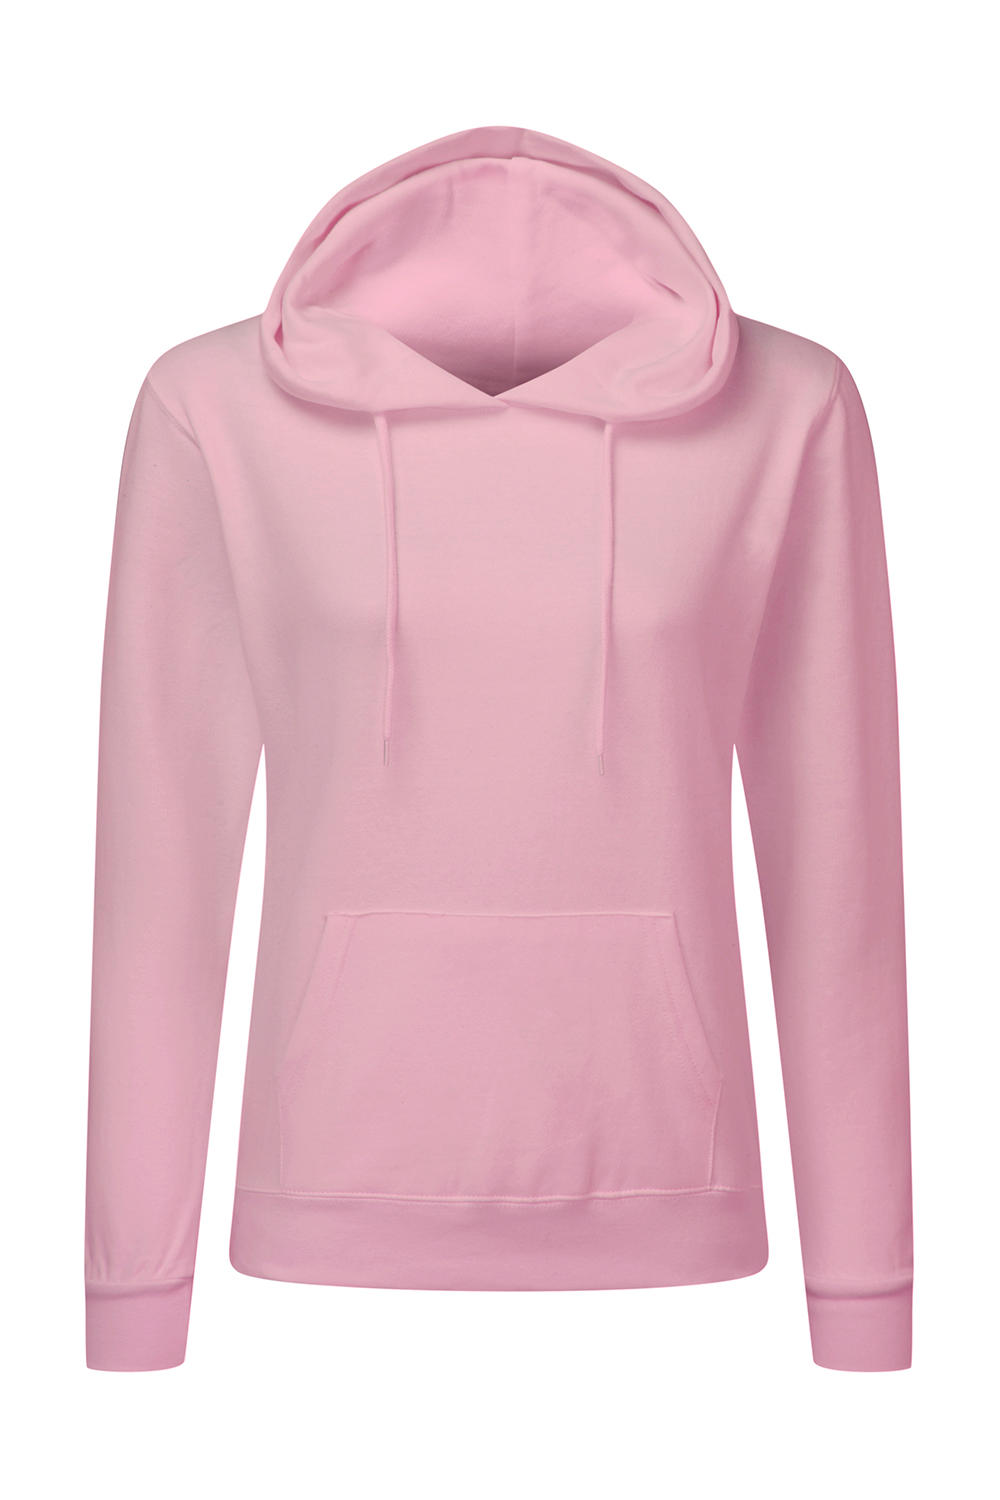  Ladies Hooded Sweatshirt in Farbe Pink